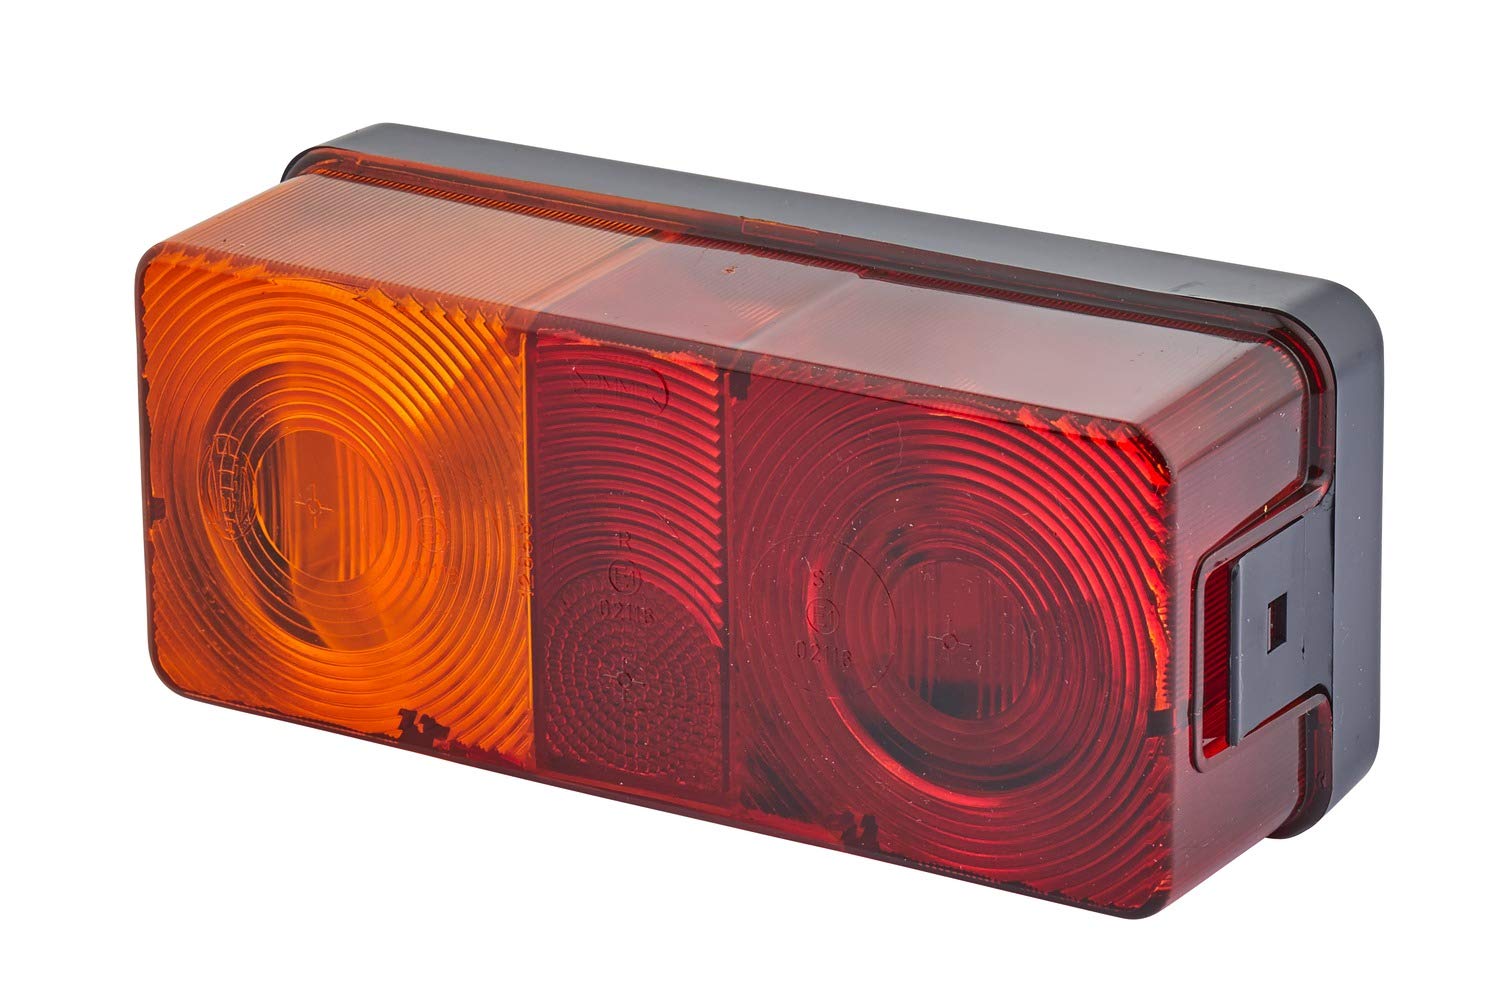 HELLA - Heckleuchte - Glühlampe - 12V - Anbau/geschraubt - Lichtscheibenfarbe: rot/gelb - Stecker: Schraubkontakt - rechts/links - Menge: 1 - 2SE 002 582-071 von Hella